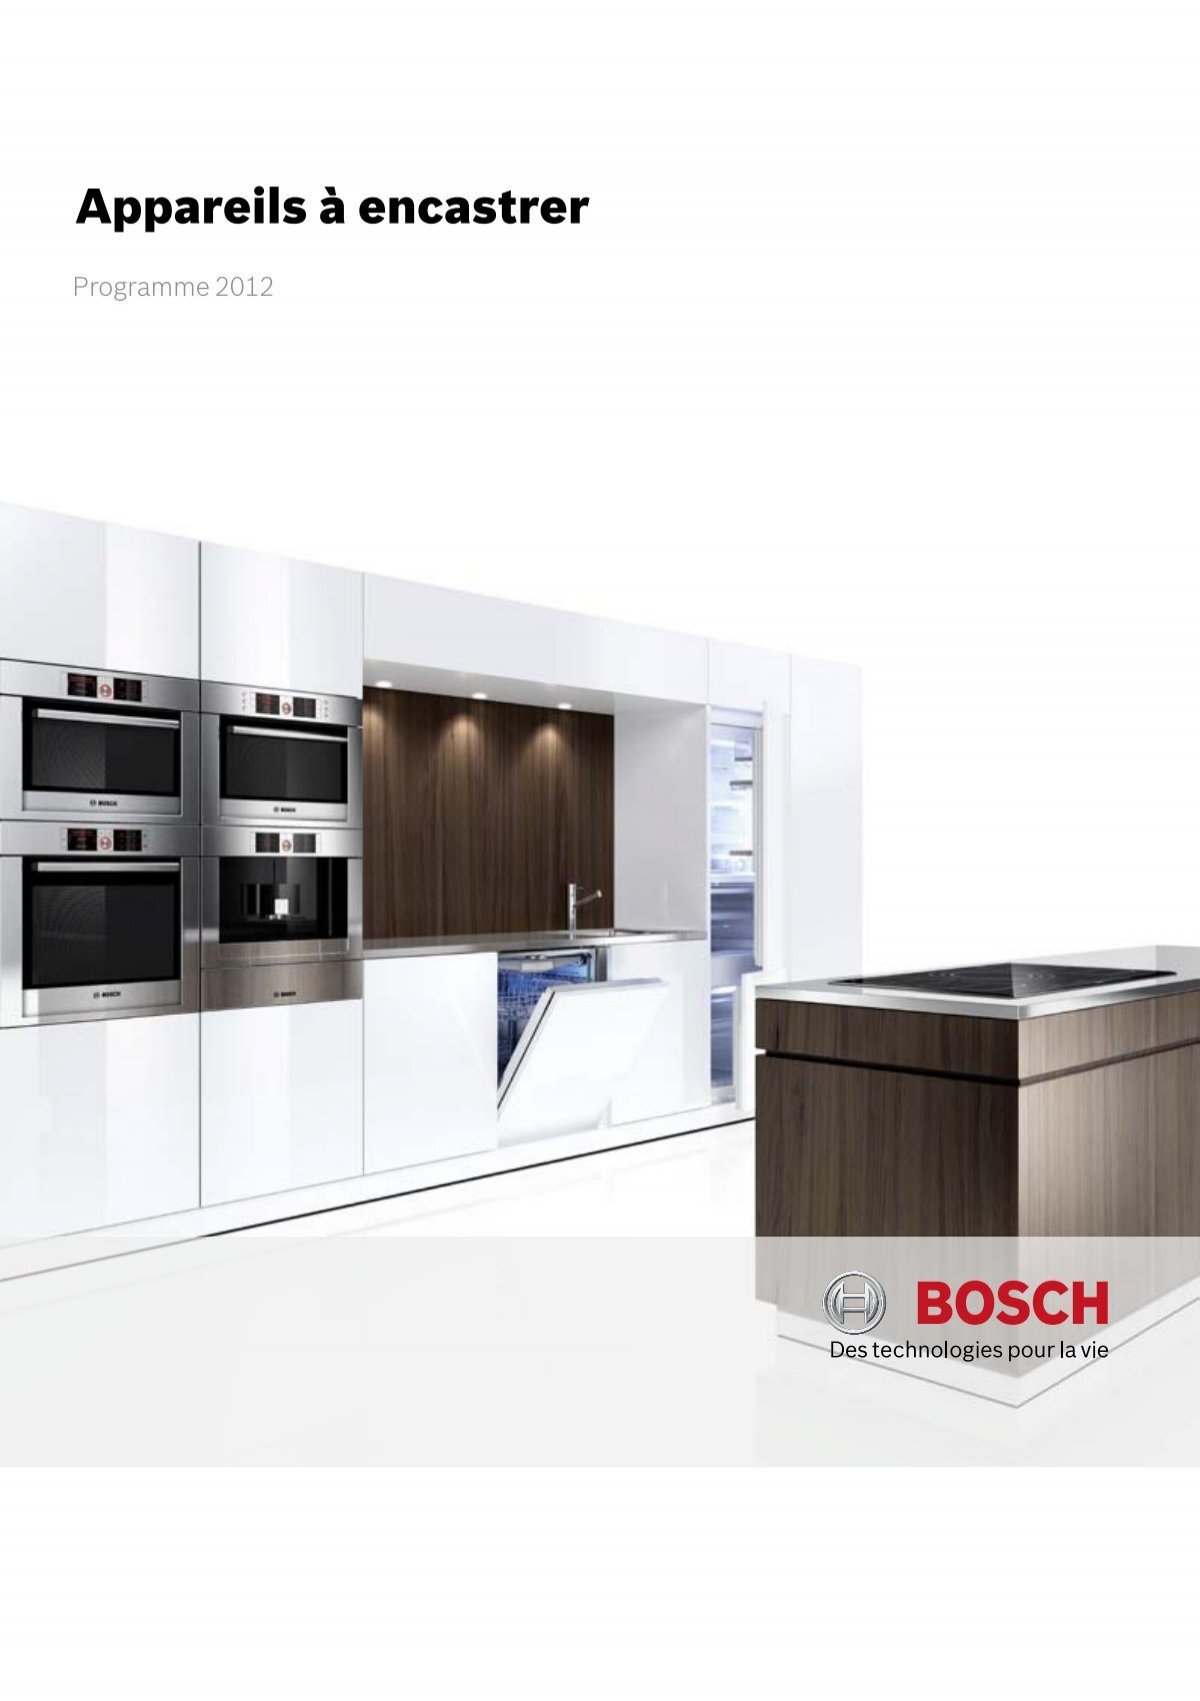 Appareils à encastrer - Bosch